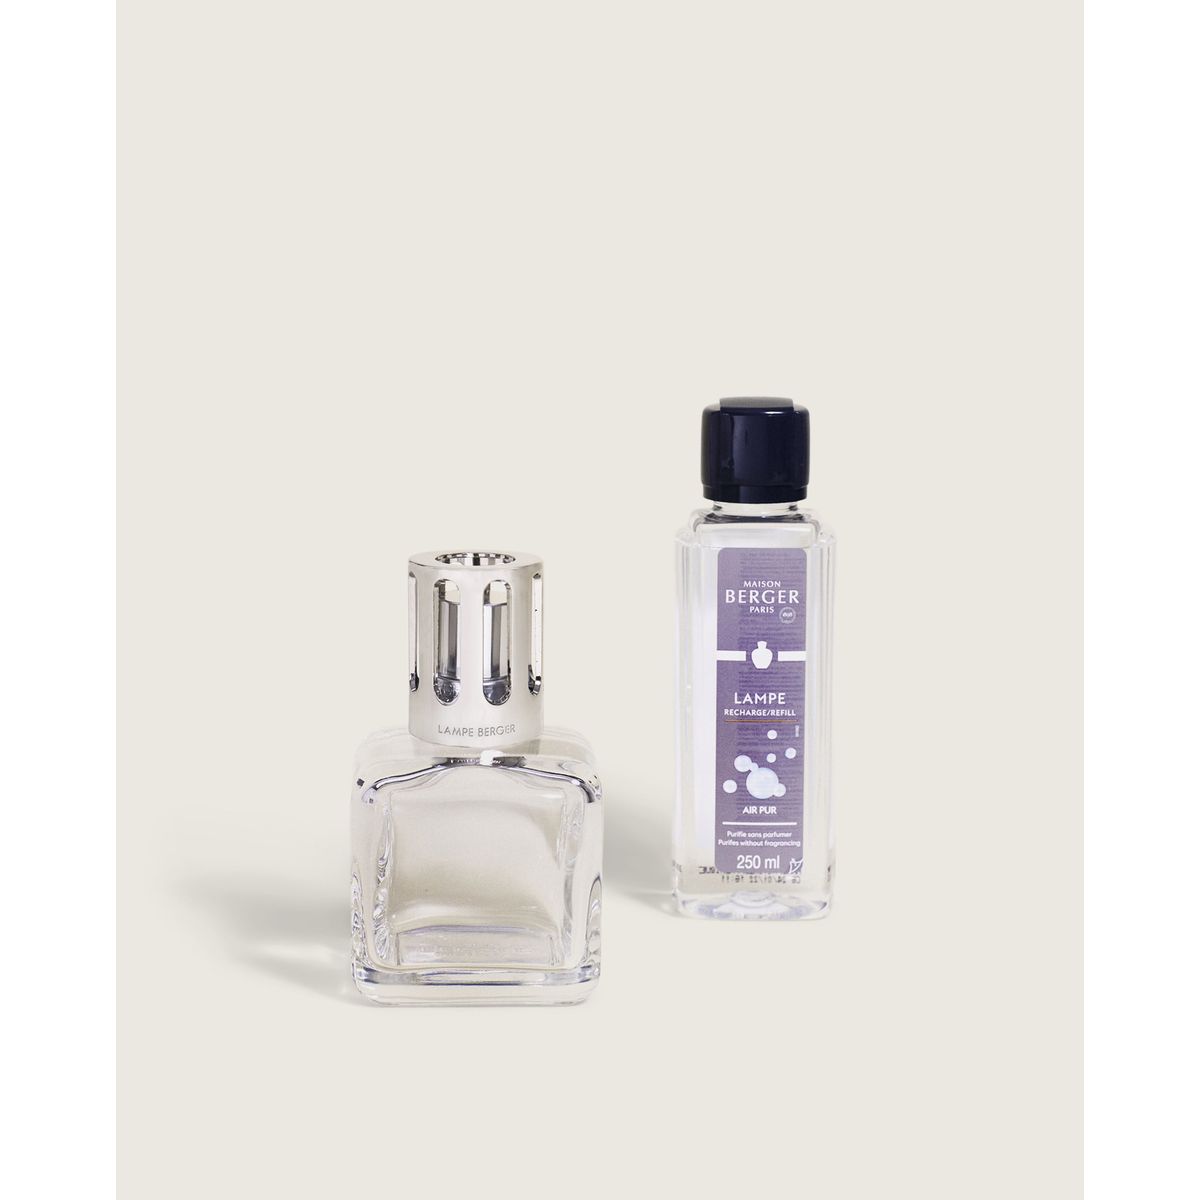 Parfum maison Lampe Berger Lolita Lempicka 500 ml x 2 - 30,50€